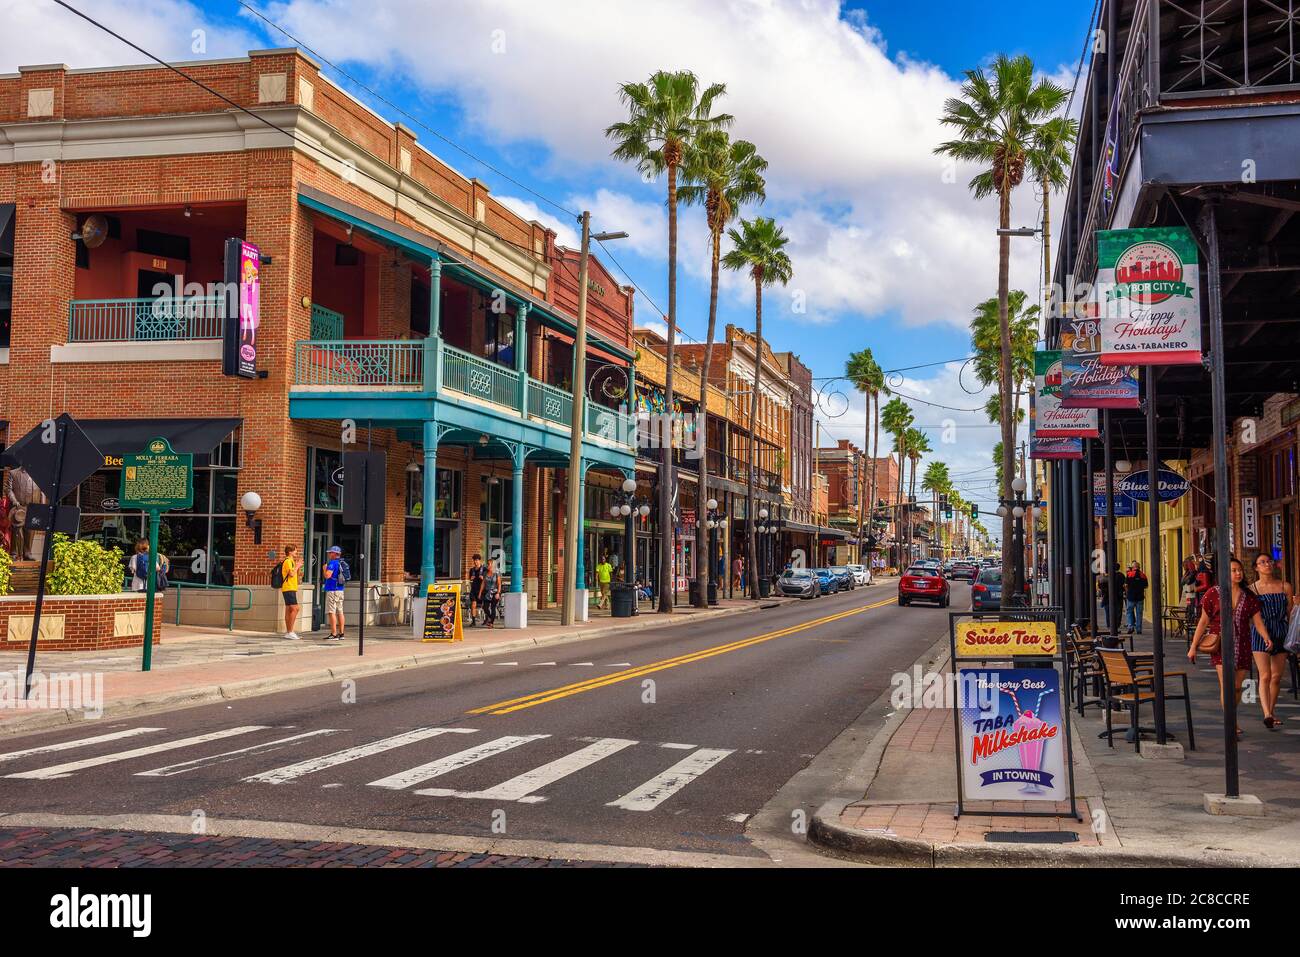 Ybor City, Tampa Bay, Floride. USA - 11 janvier 2020 : célèbre 7e Avenue dans la ville historique d'Ybor, maintenant désigné comme un site historique national D Banque D'Images